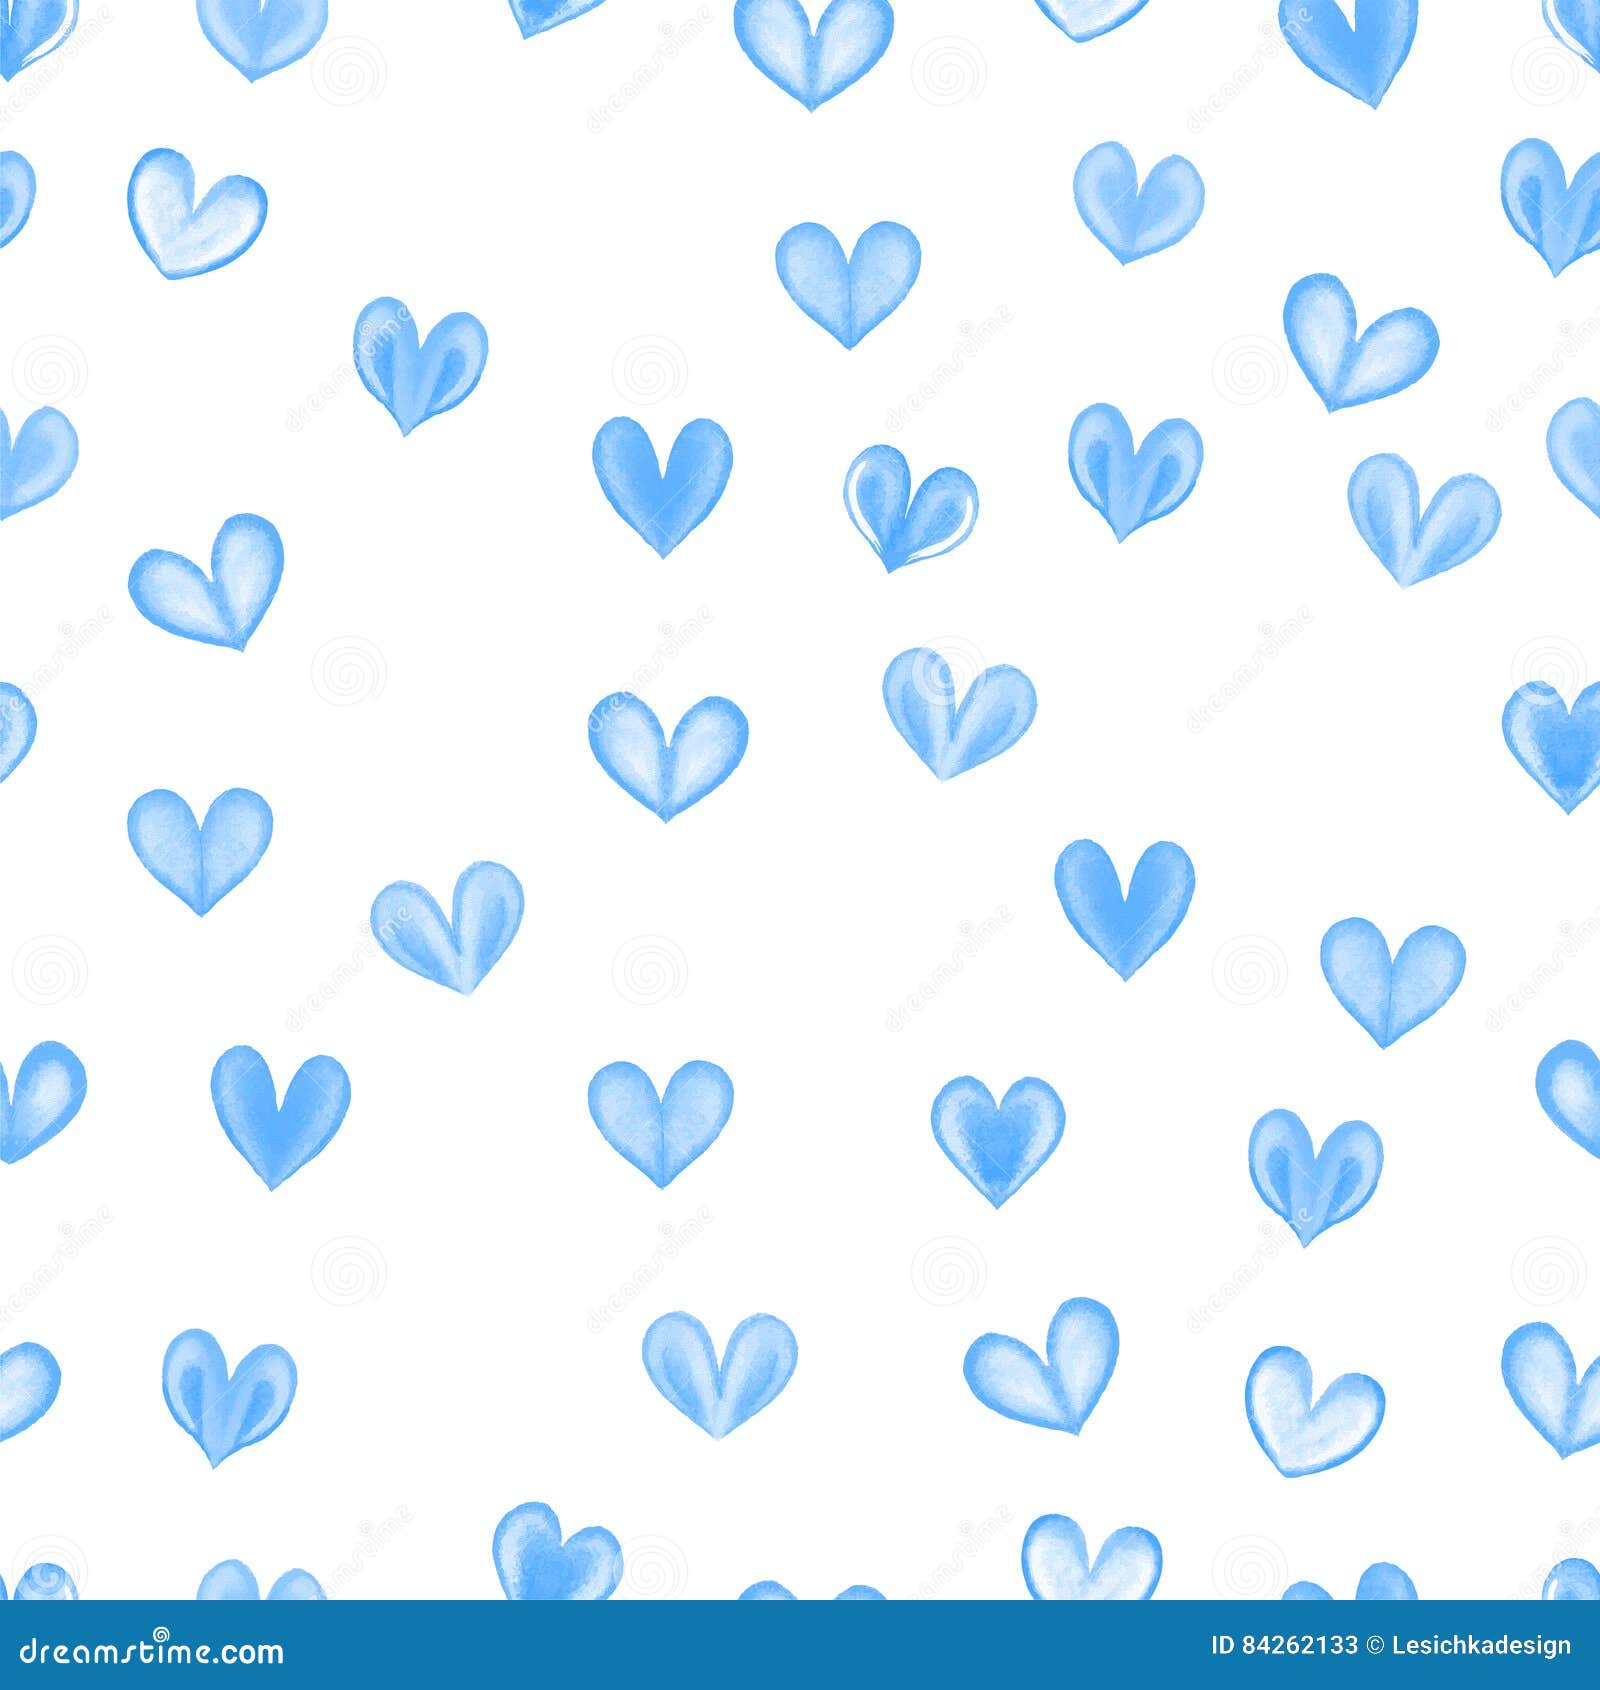 Hãy xem hình nền tim màu xanh này, nó tràn đầy tình yêu và sự bình an. Sắc xanh nồng nàn sẽ làm trái tim bạn đong đầy cảm xúc và động lòng người.